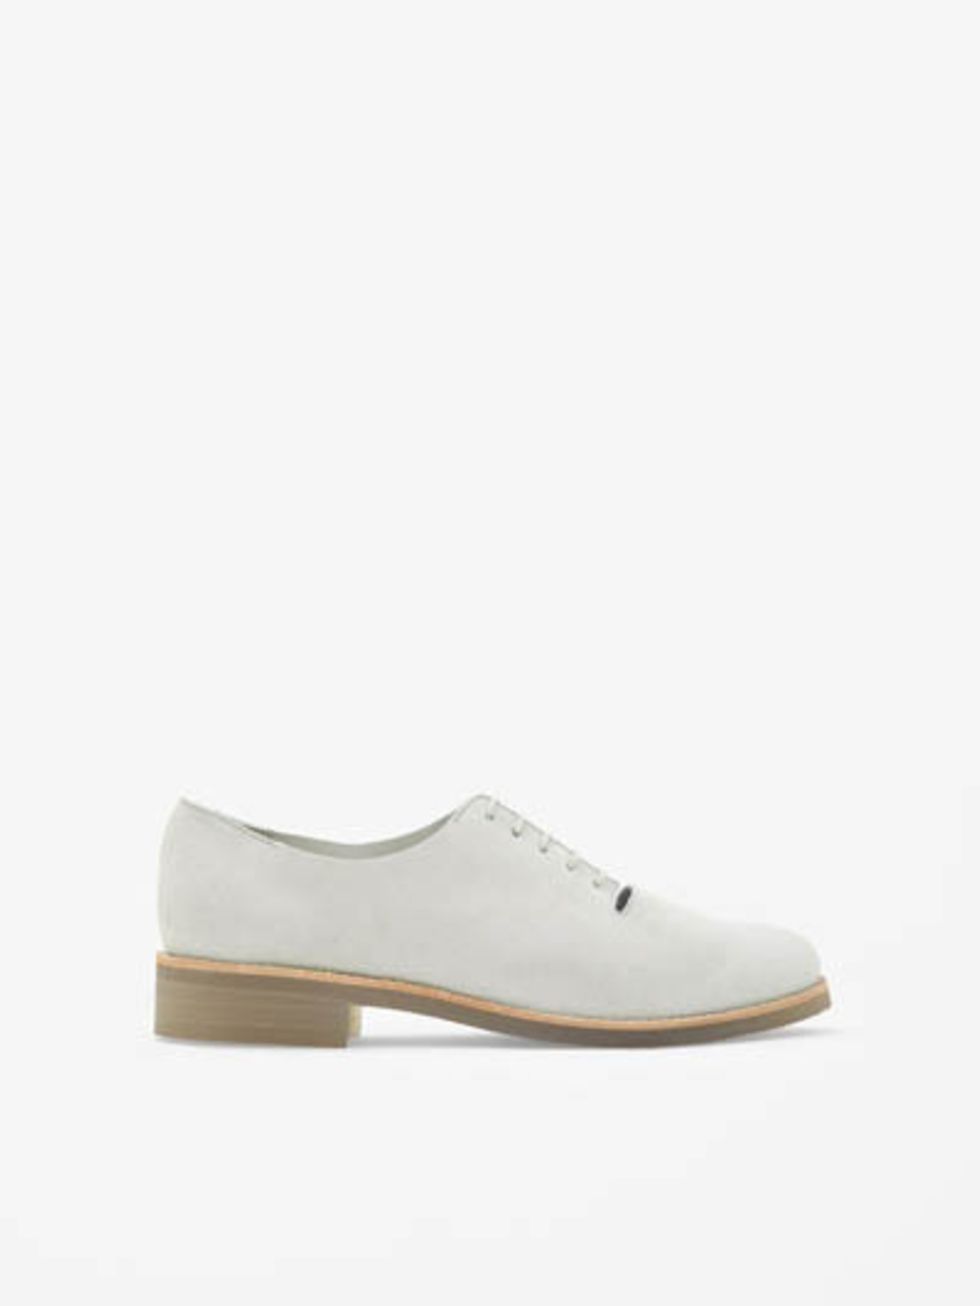 Brown, Product, Shoe, White, Tan, Grey, Beige, Fashion design, Dress shoe, Walking shoe, 